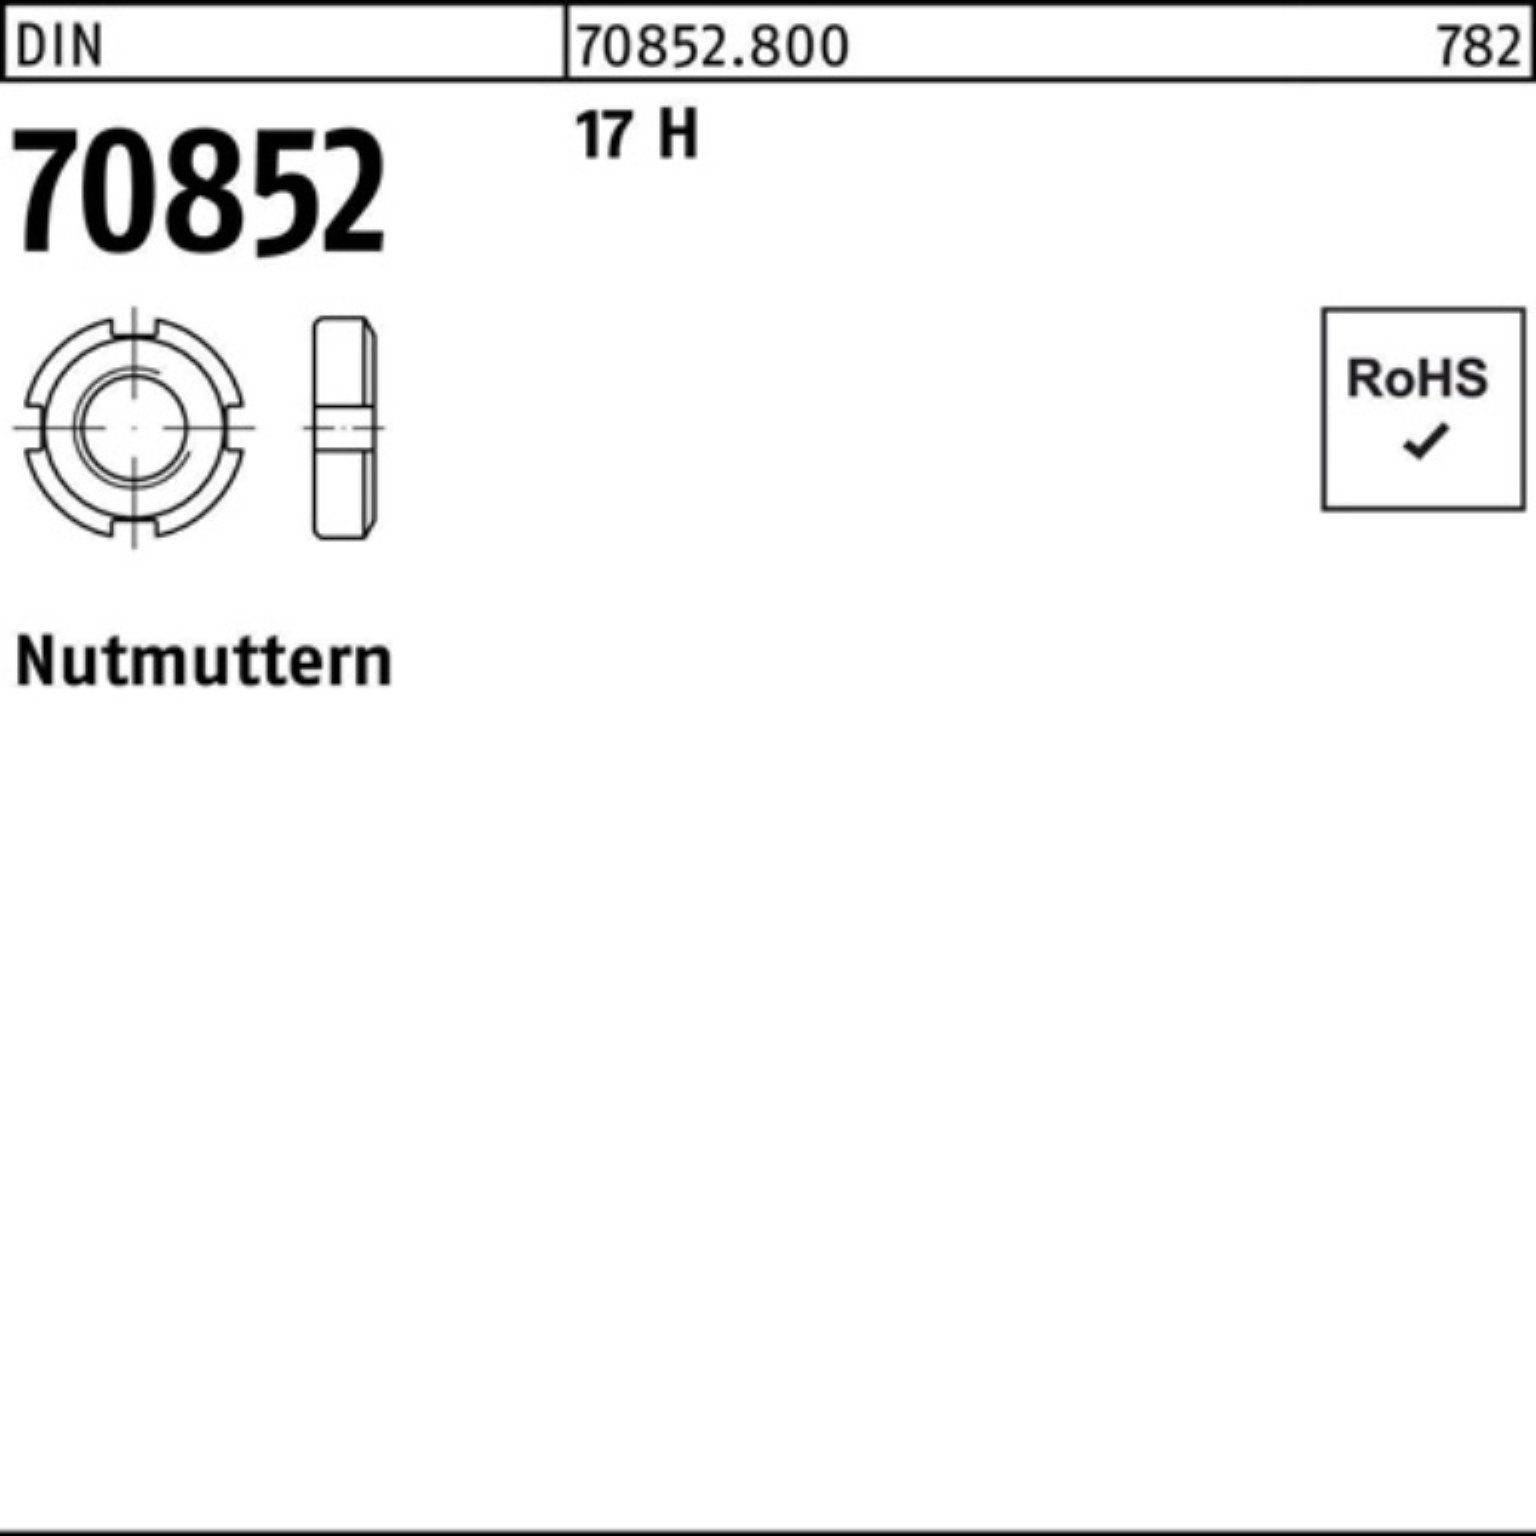 Reyher Nutmutter 100er Pack Nutmutter DIN 70852 M42x 1,5 17 H 1 Stück DIN 70852 17 H N